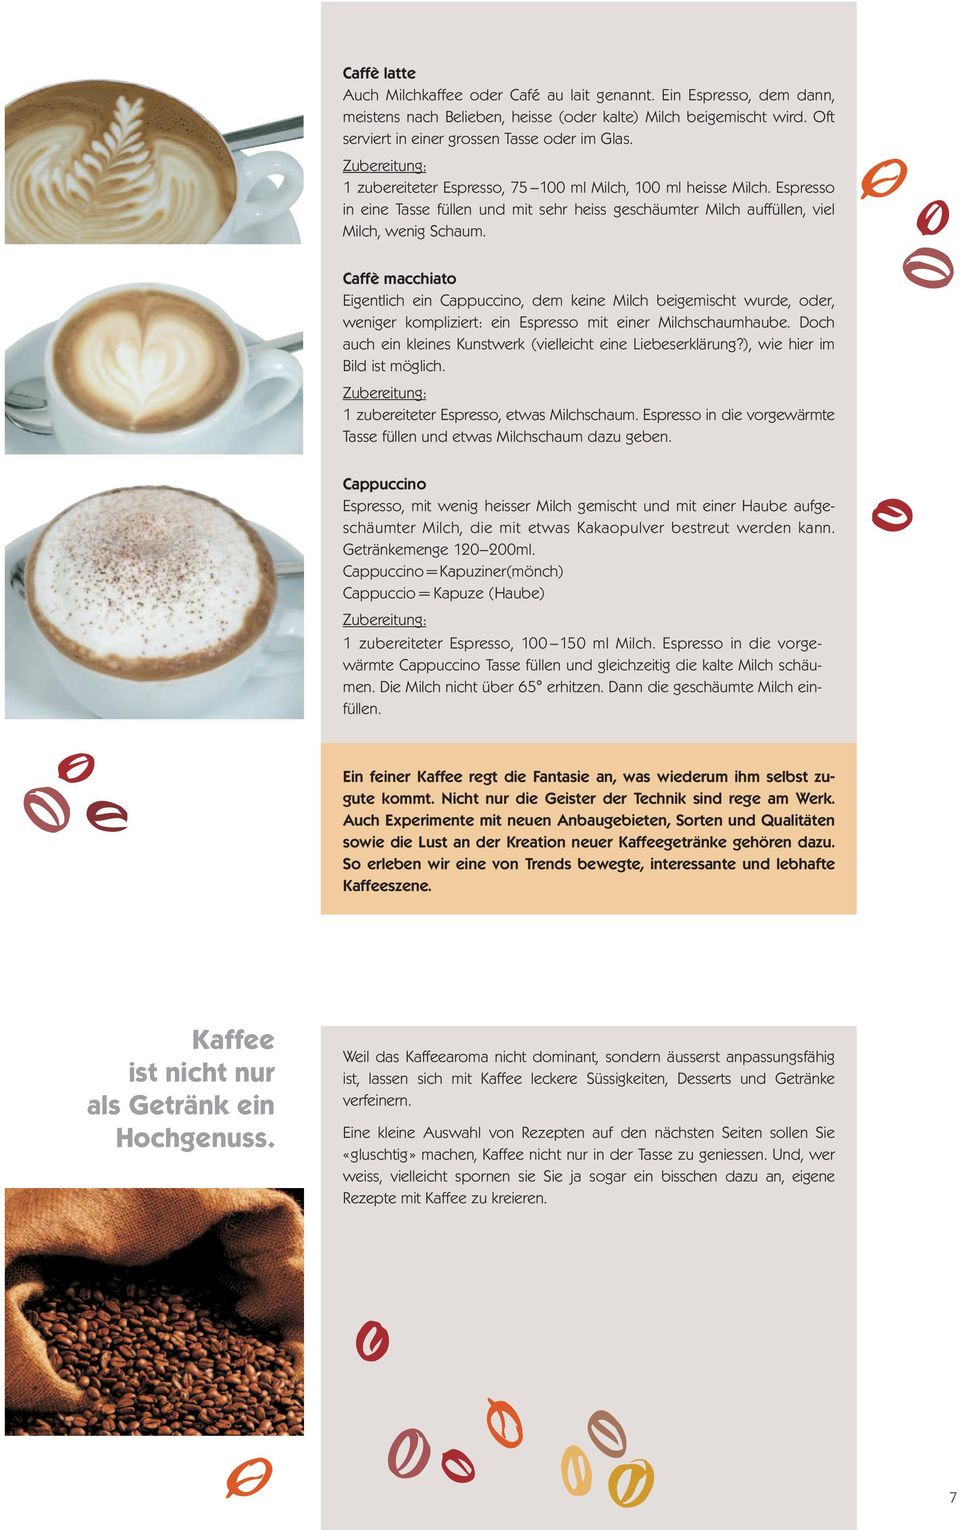 Caffè macchiato Eigentlich ein Cappuccino, dem keine Milch beigemischt wurde, oder, weniger kompliziert: ein Espresso mit einer Milchschaumhaube.